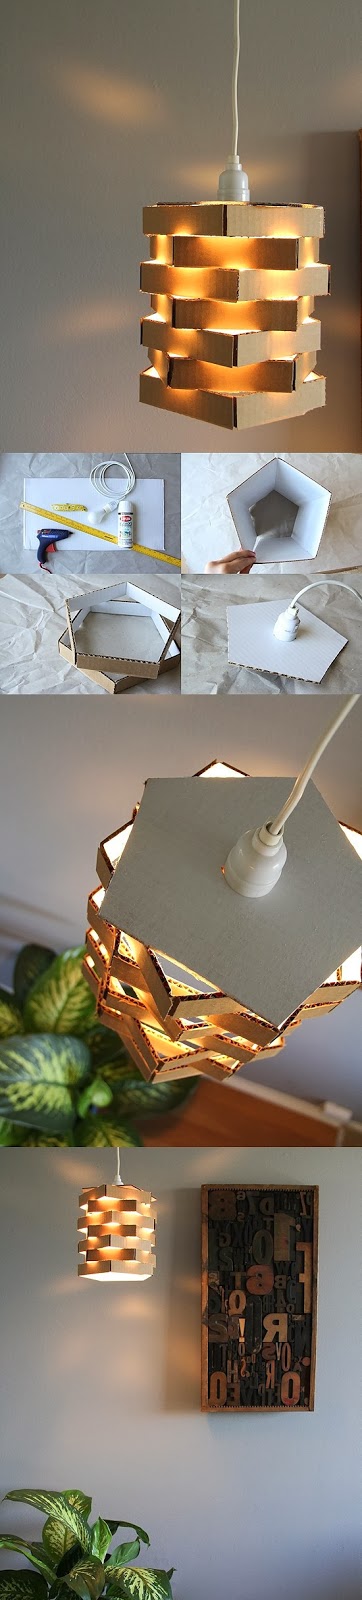 Luminária de papelão Diy+lumin%C3%A1ria+papel%C3%A3o